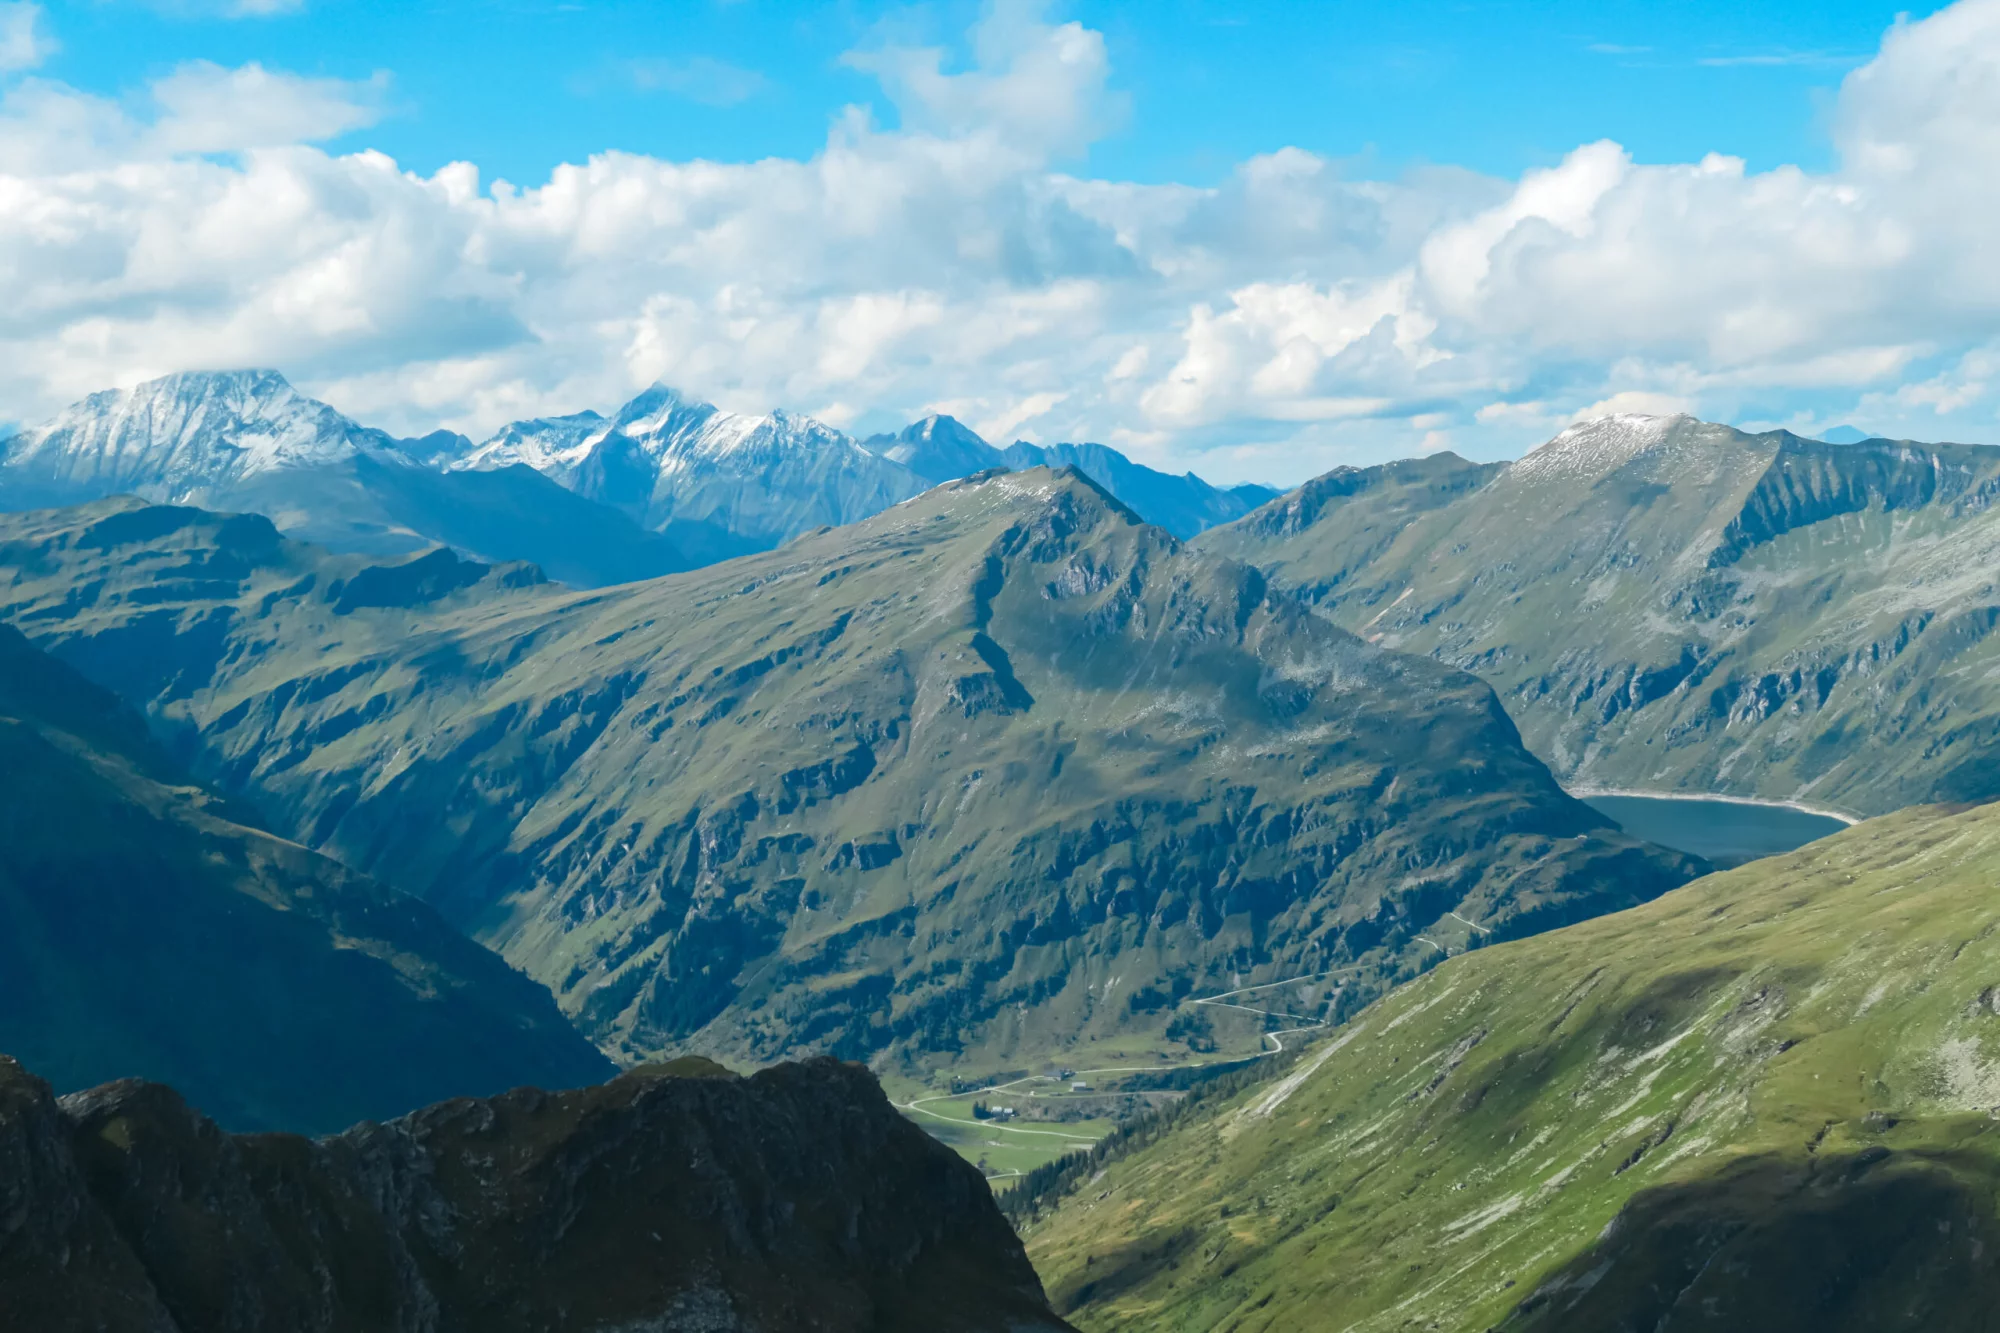 Панорамный вид на величественные заснеженные горные вершины в группе Глокнер в национальном парке Хай-Тауэрн, Каринтия-Зальцбург, Австрия. Путешествие по австрийским Альпам. Вид с горы Грайлькопф. Эскапизм